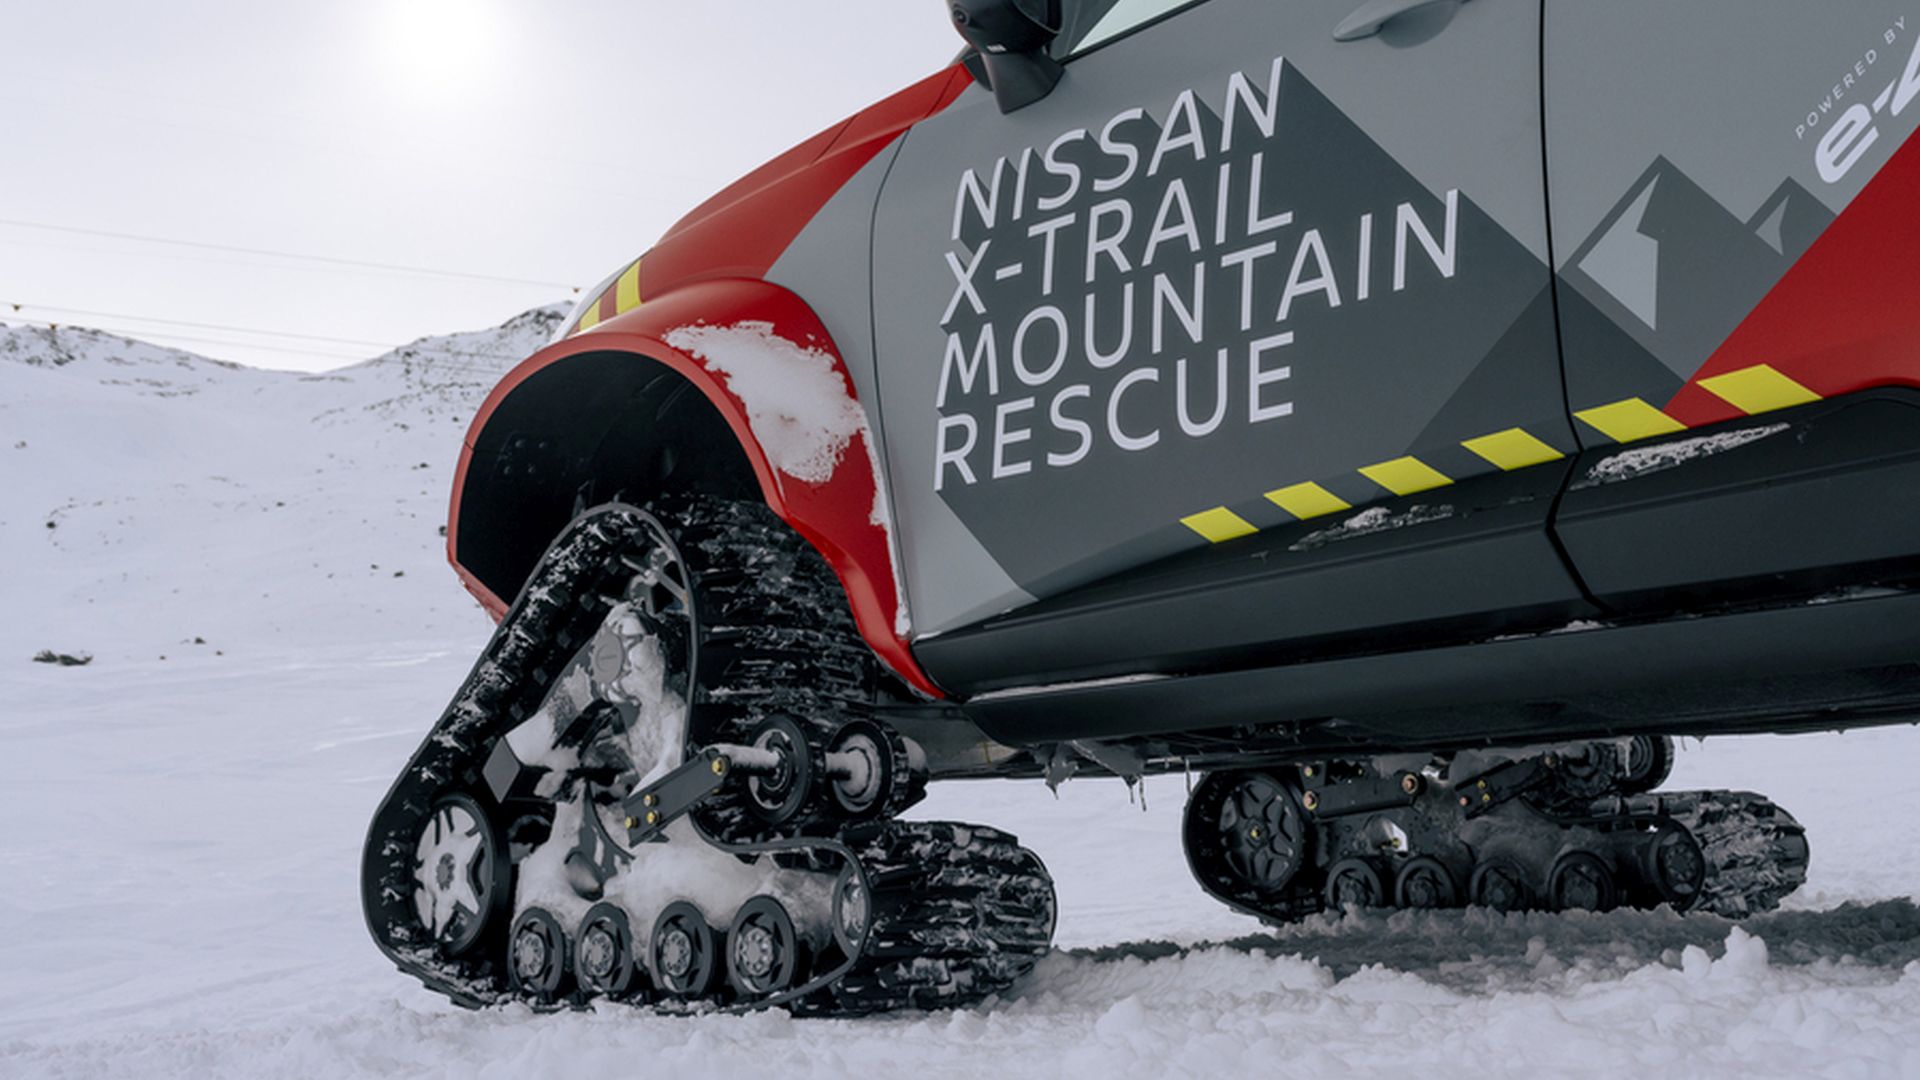 To Nissan X-Trail Mountain Rescue